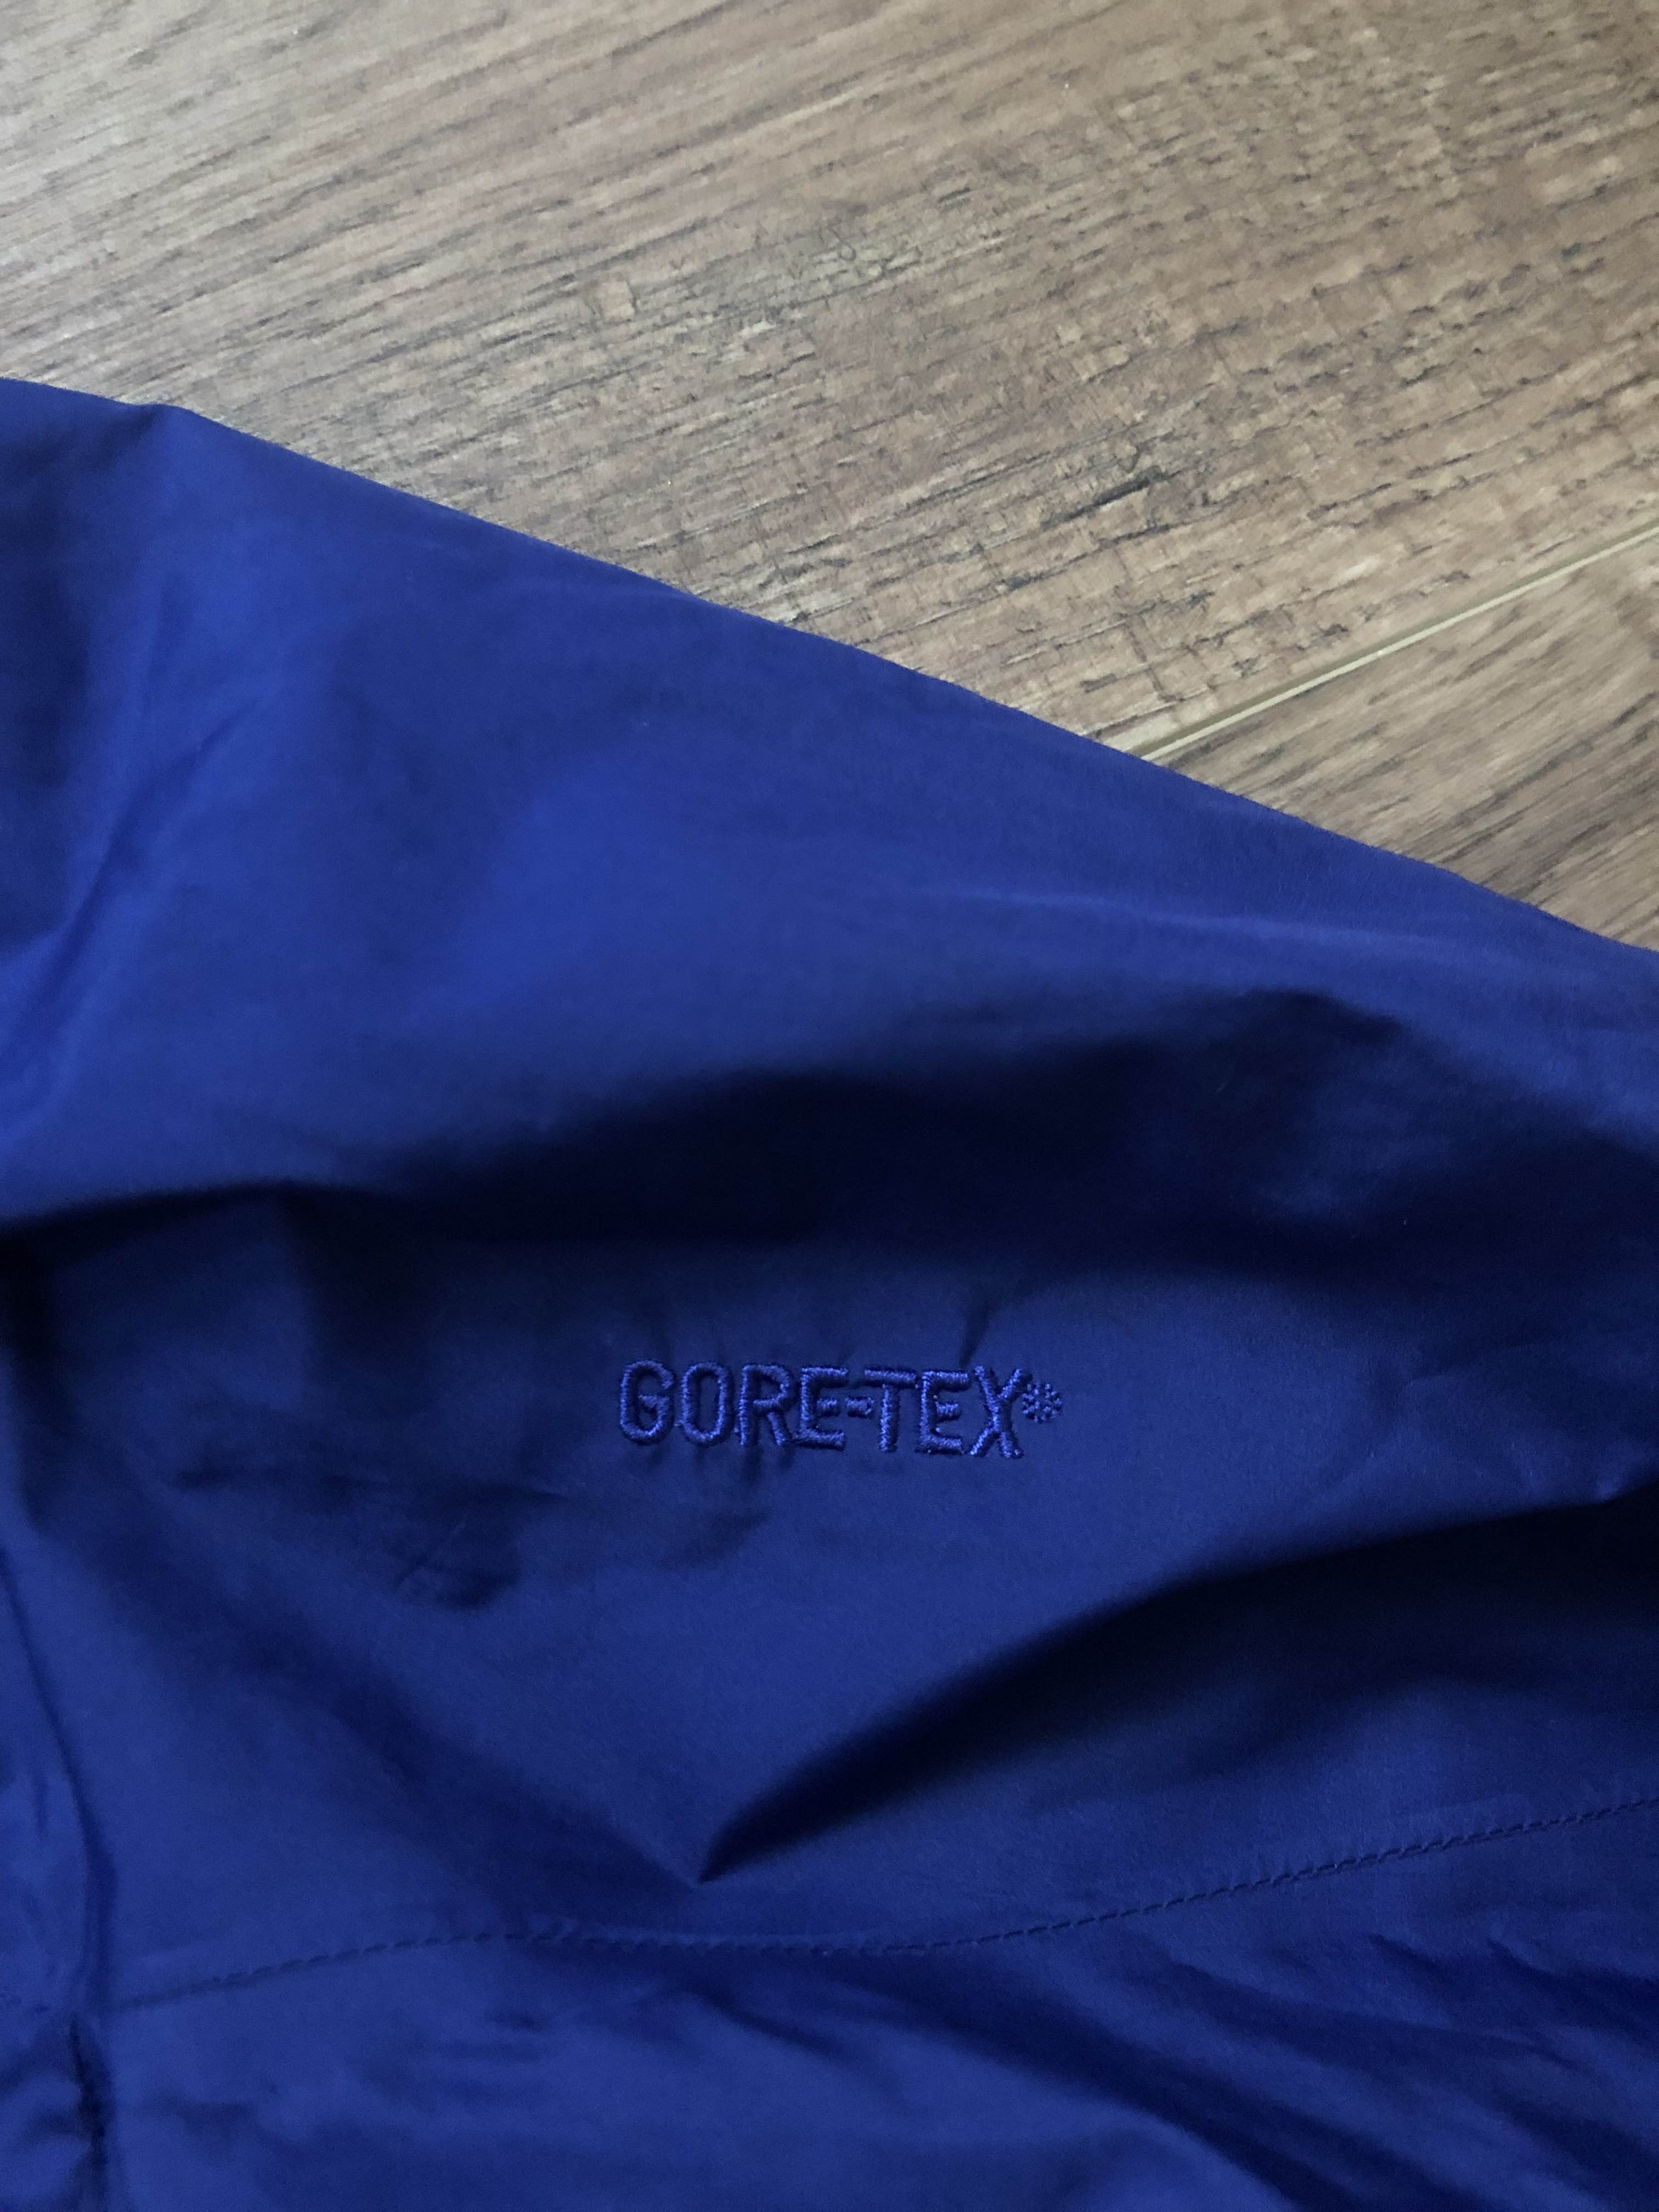 Arcteryx GoreTex jacket - 4